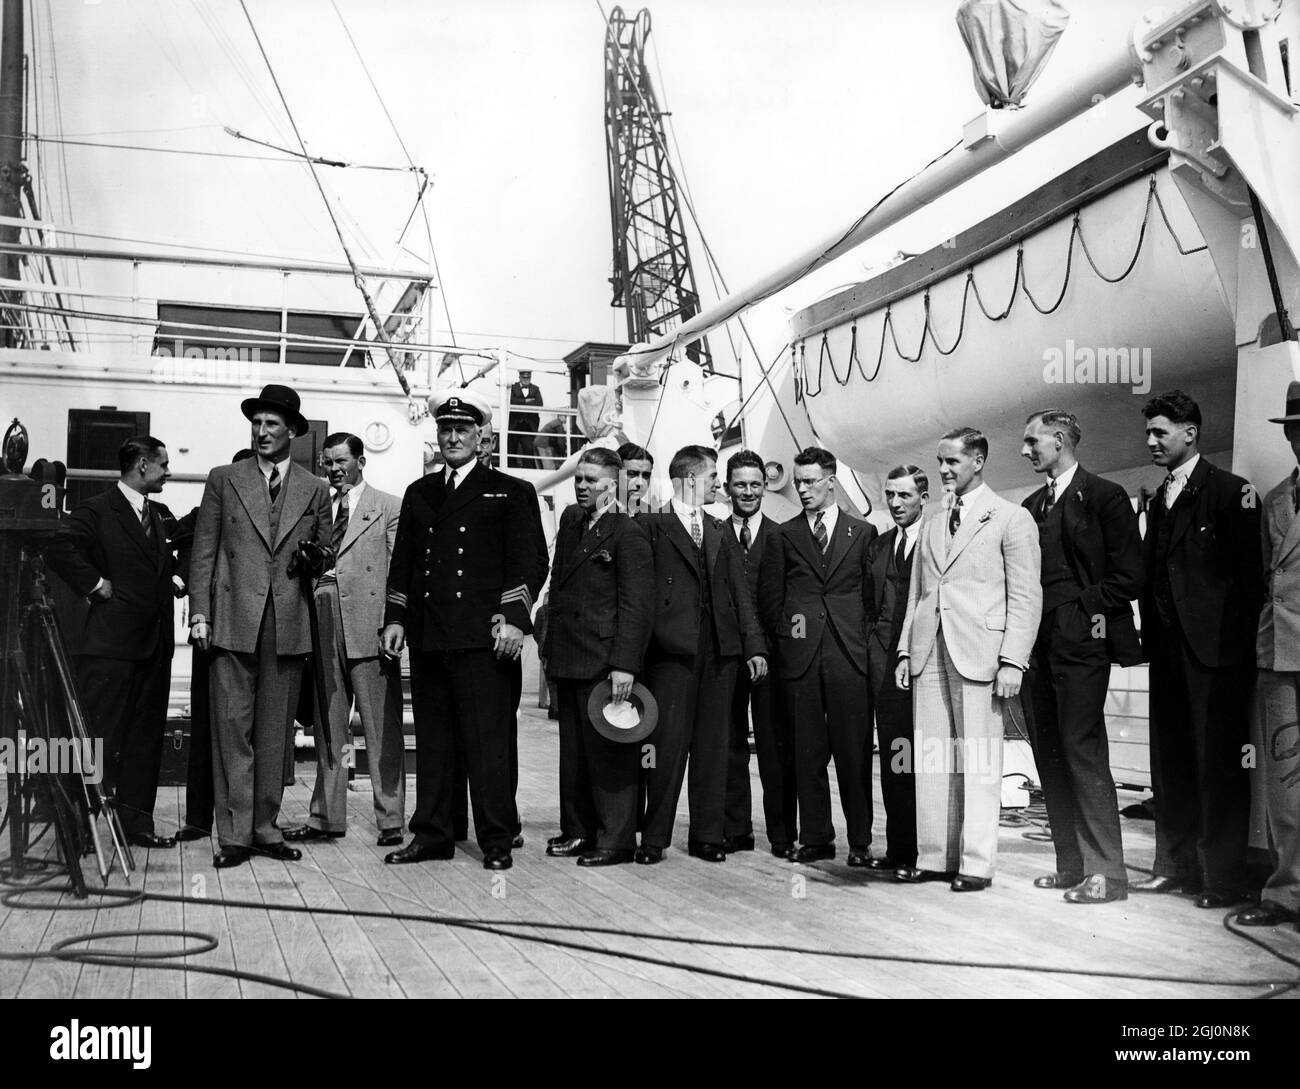 Das 1932 England Test Cricket Team ist bereit, Tilbury Docks, London, England zu verlassen. Douglas Jardine (Kapitän) ist auf der linken Seite mit einem Hut zu sehen. Die Ashes-Serie von 1932-3 war berüchtigt für Jardines Beintheorie, auch bekannt als Bodyline. 17. September 1932 ©Topham - TopFoto Stockfoto